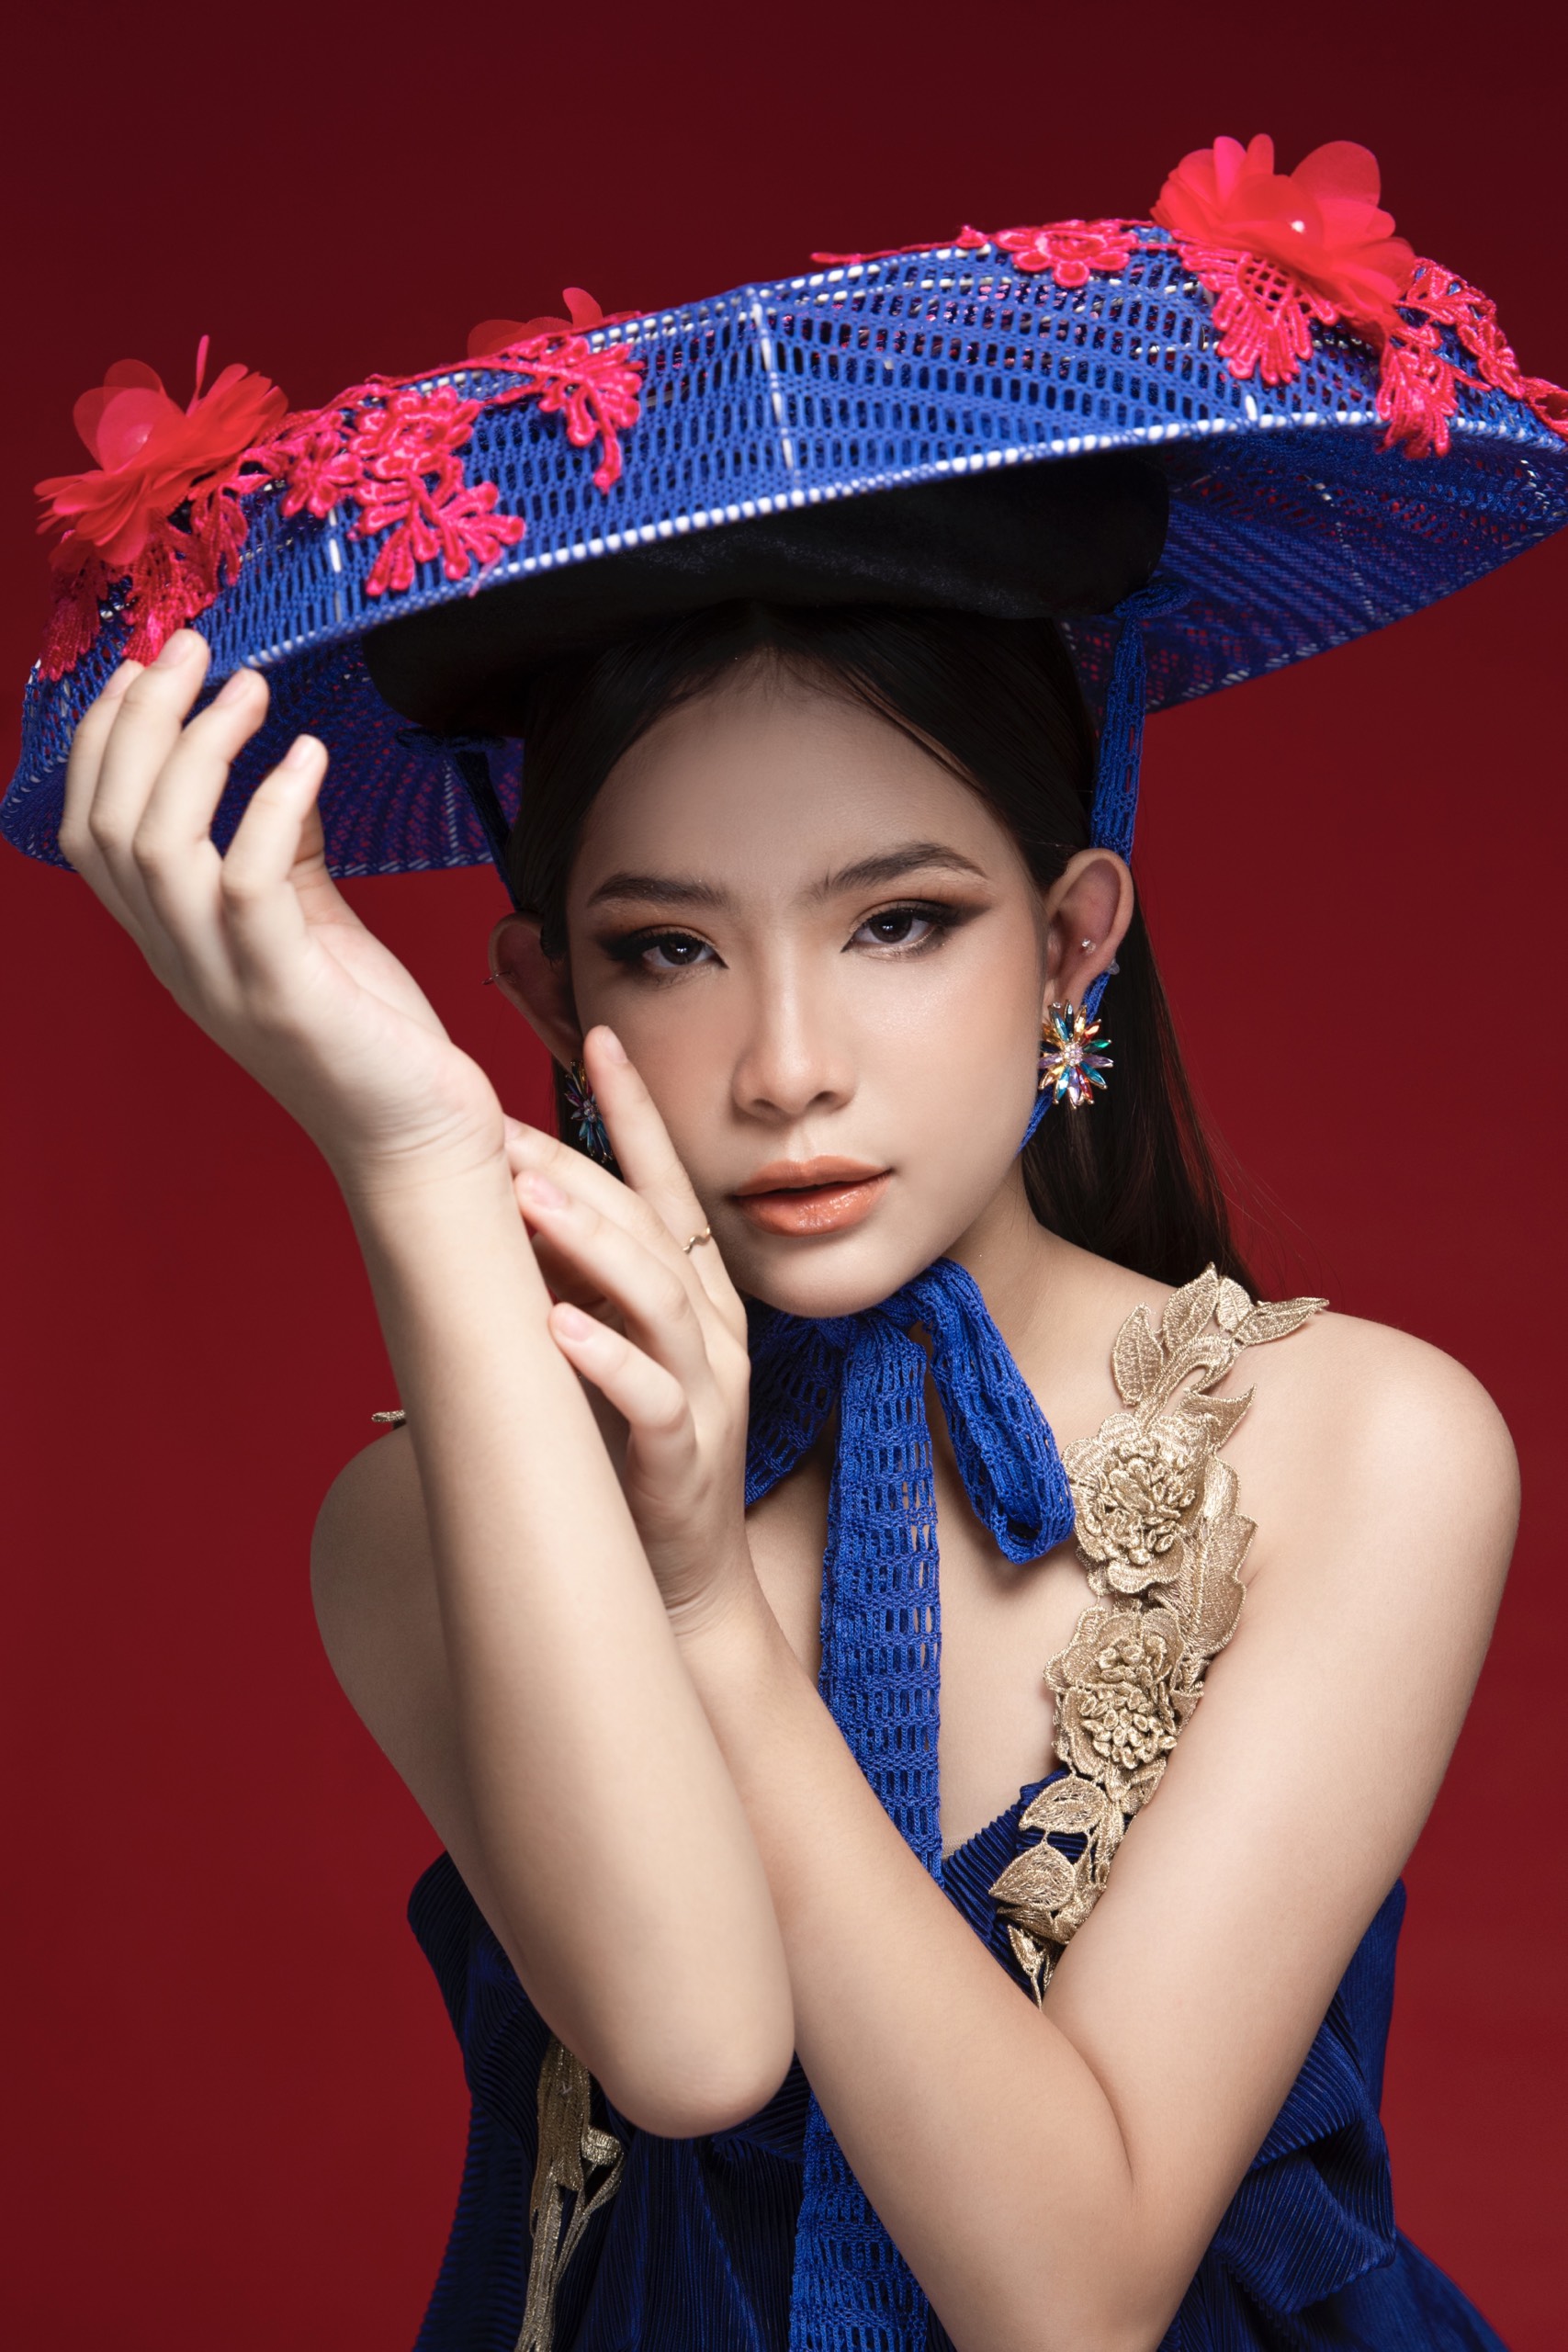 Teen model Trần Bảo Châu thần thái bên cạnh siêu mẫu quốc tế Dianka - Vợ thủ môn Bùi Tiến Dũng